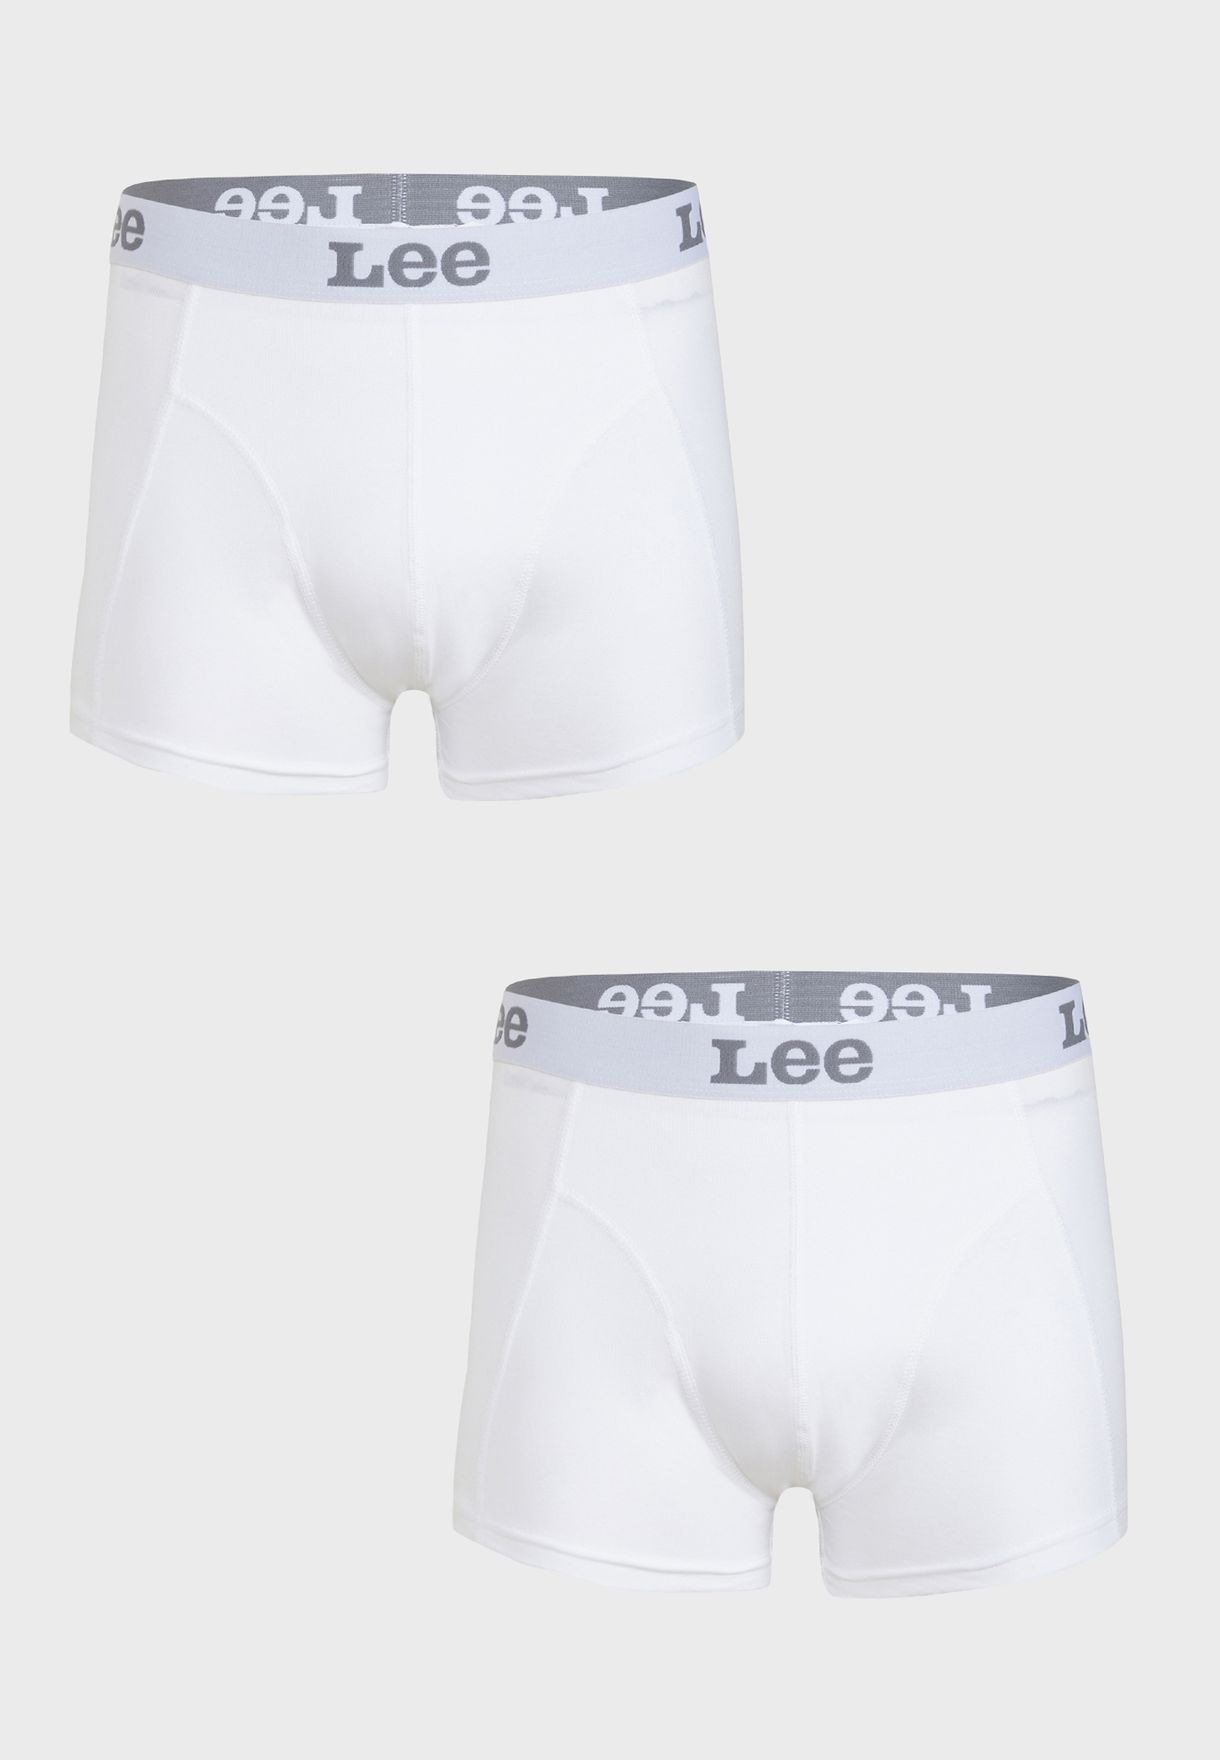 Комплект трусов мужских Lee LP03CK12 белых M - купить в SportPoint, цена на Мегамаркет